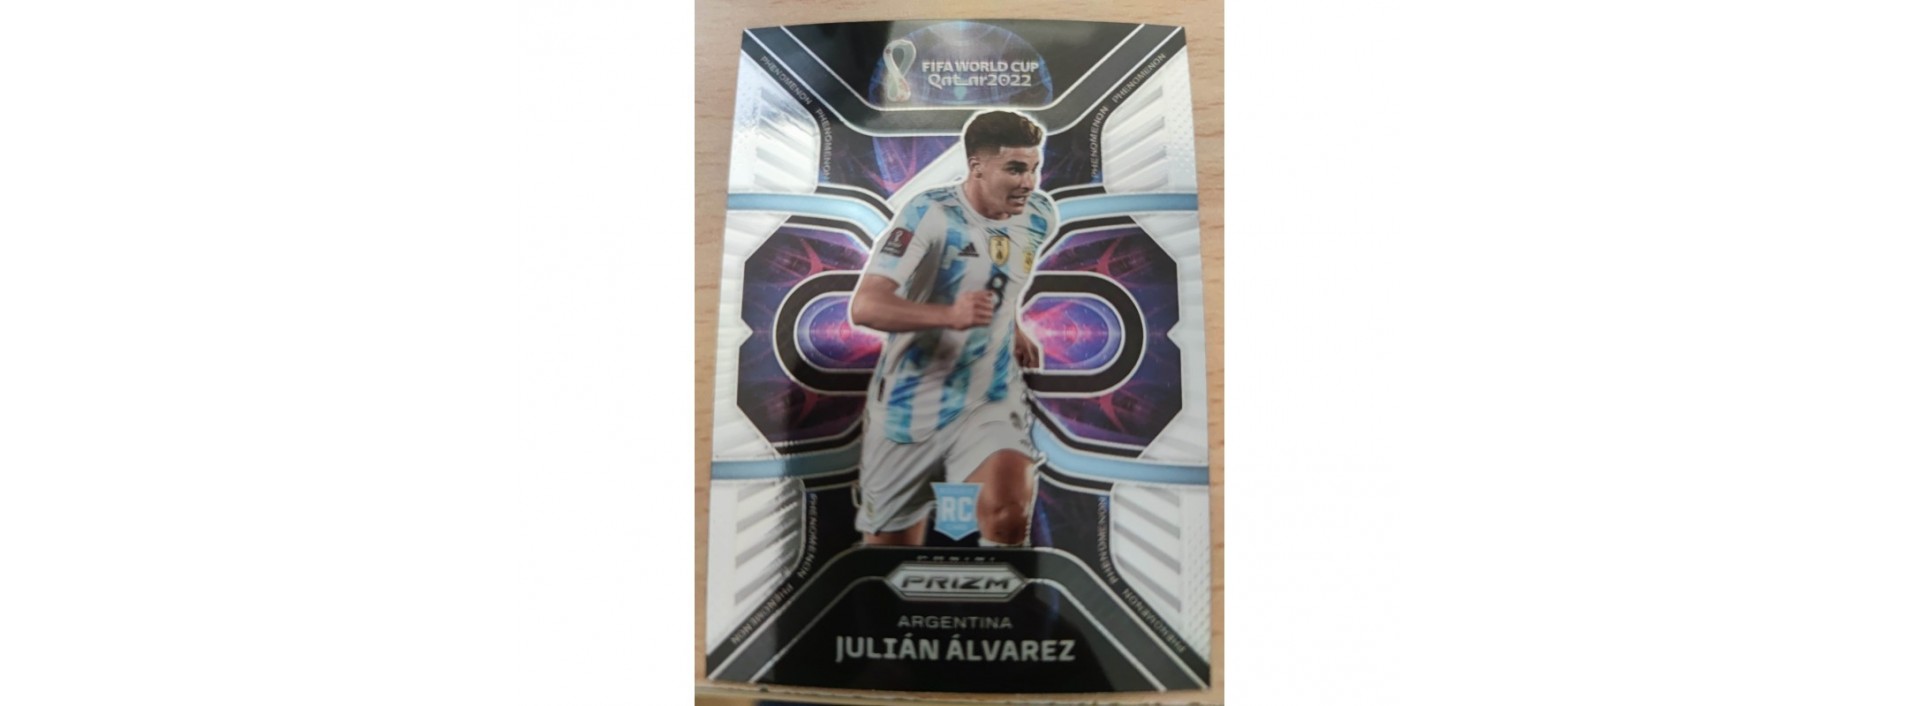 JULIAN ALVAREZ